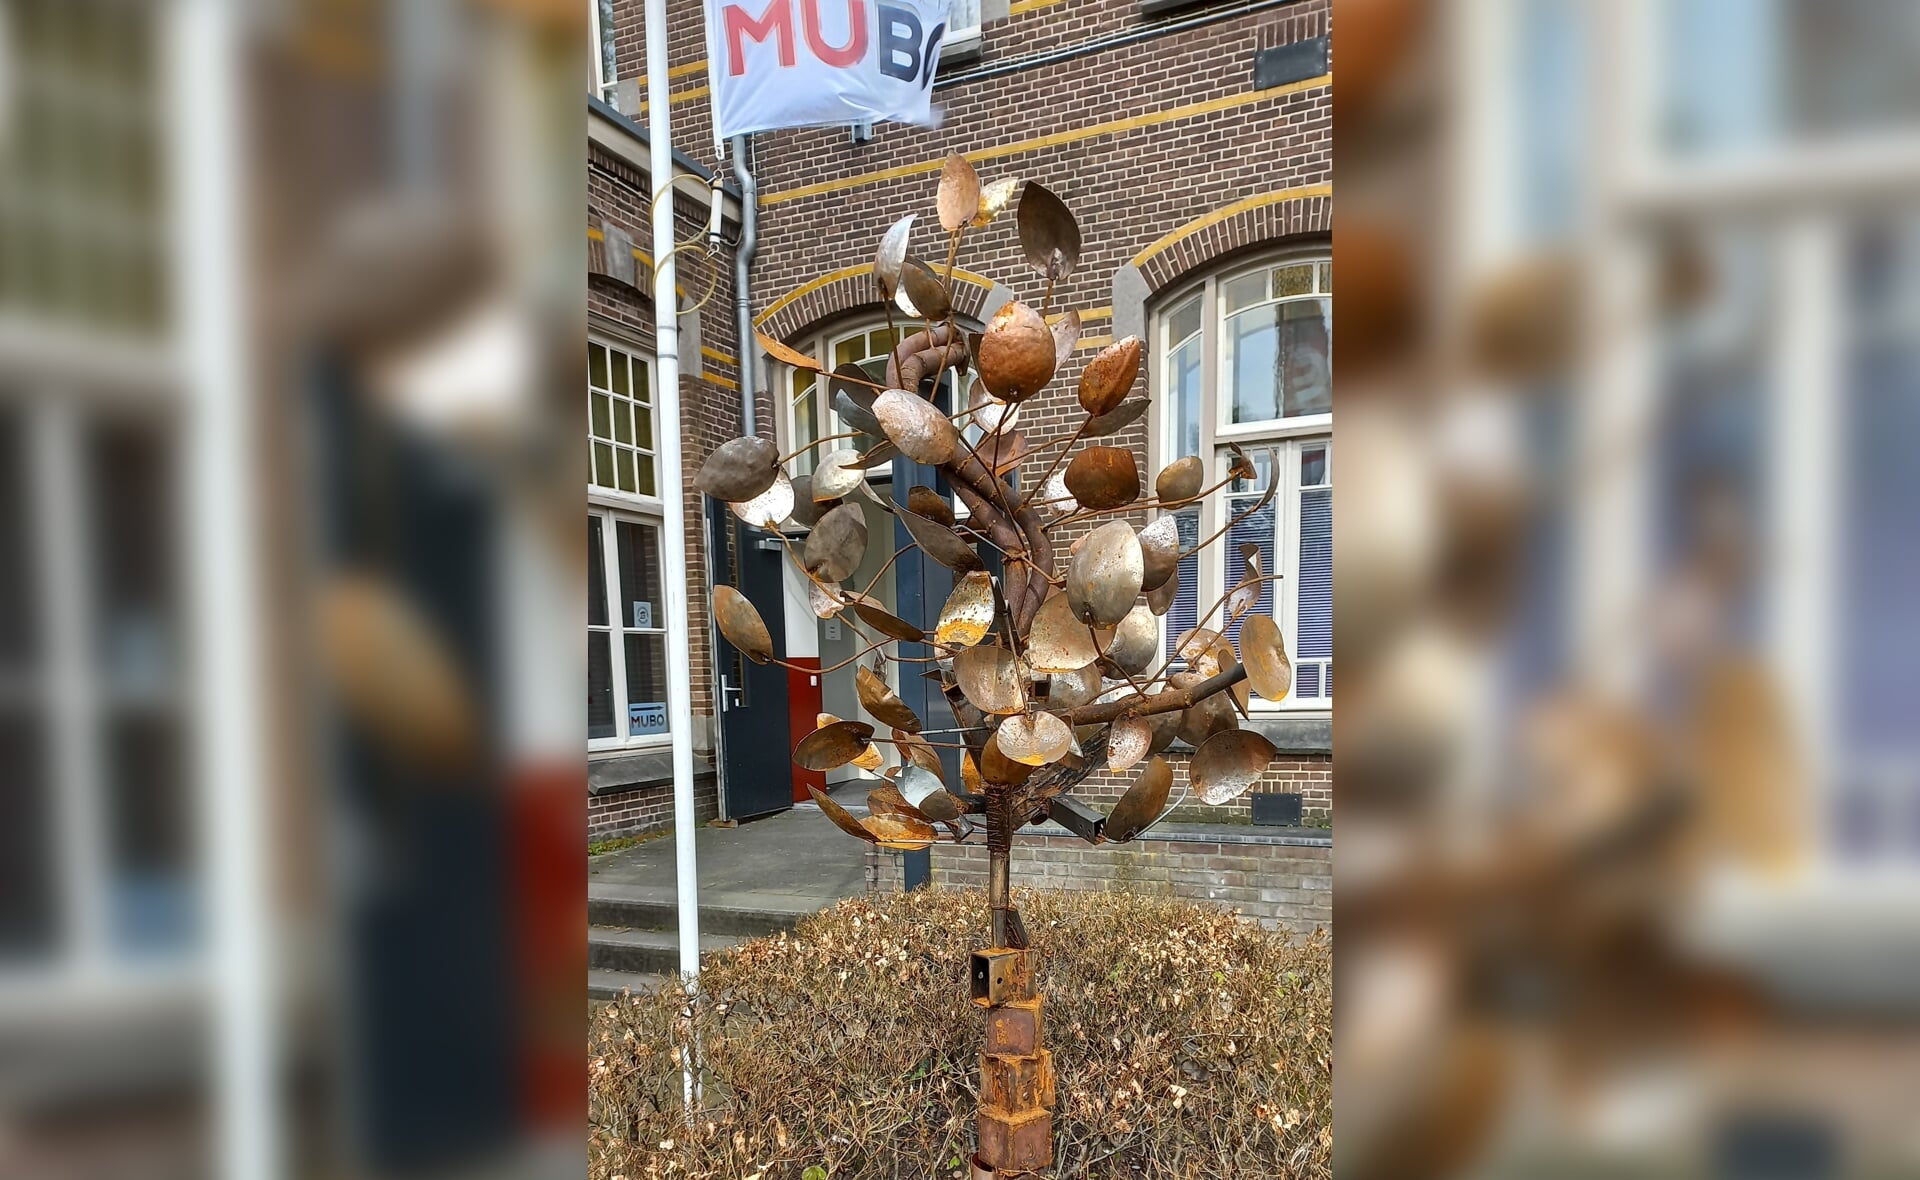 De participatieboom is een van de 28 kunstwerken van de expositie MuBo viert jong talent. Leerlingen van het Vada-college hebben hem gemaakt, onder leiding van kunstenaar-docent Marc de Laat.